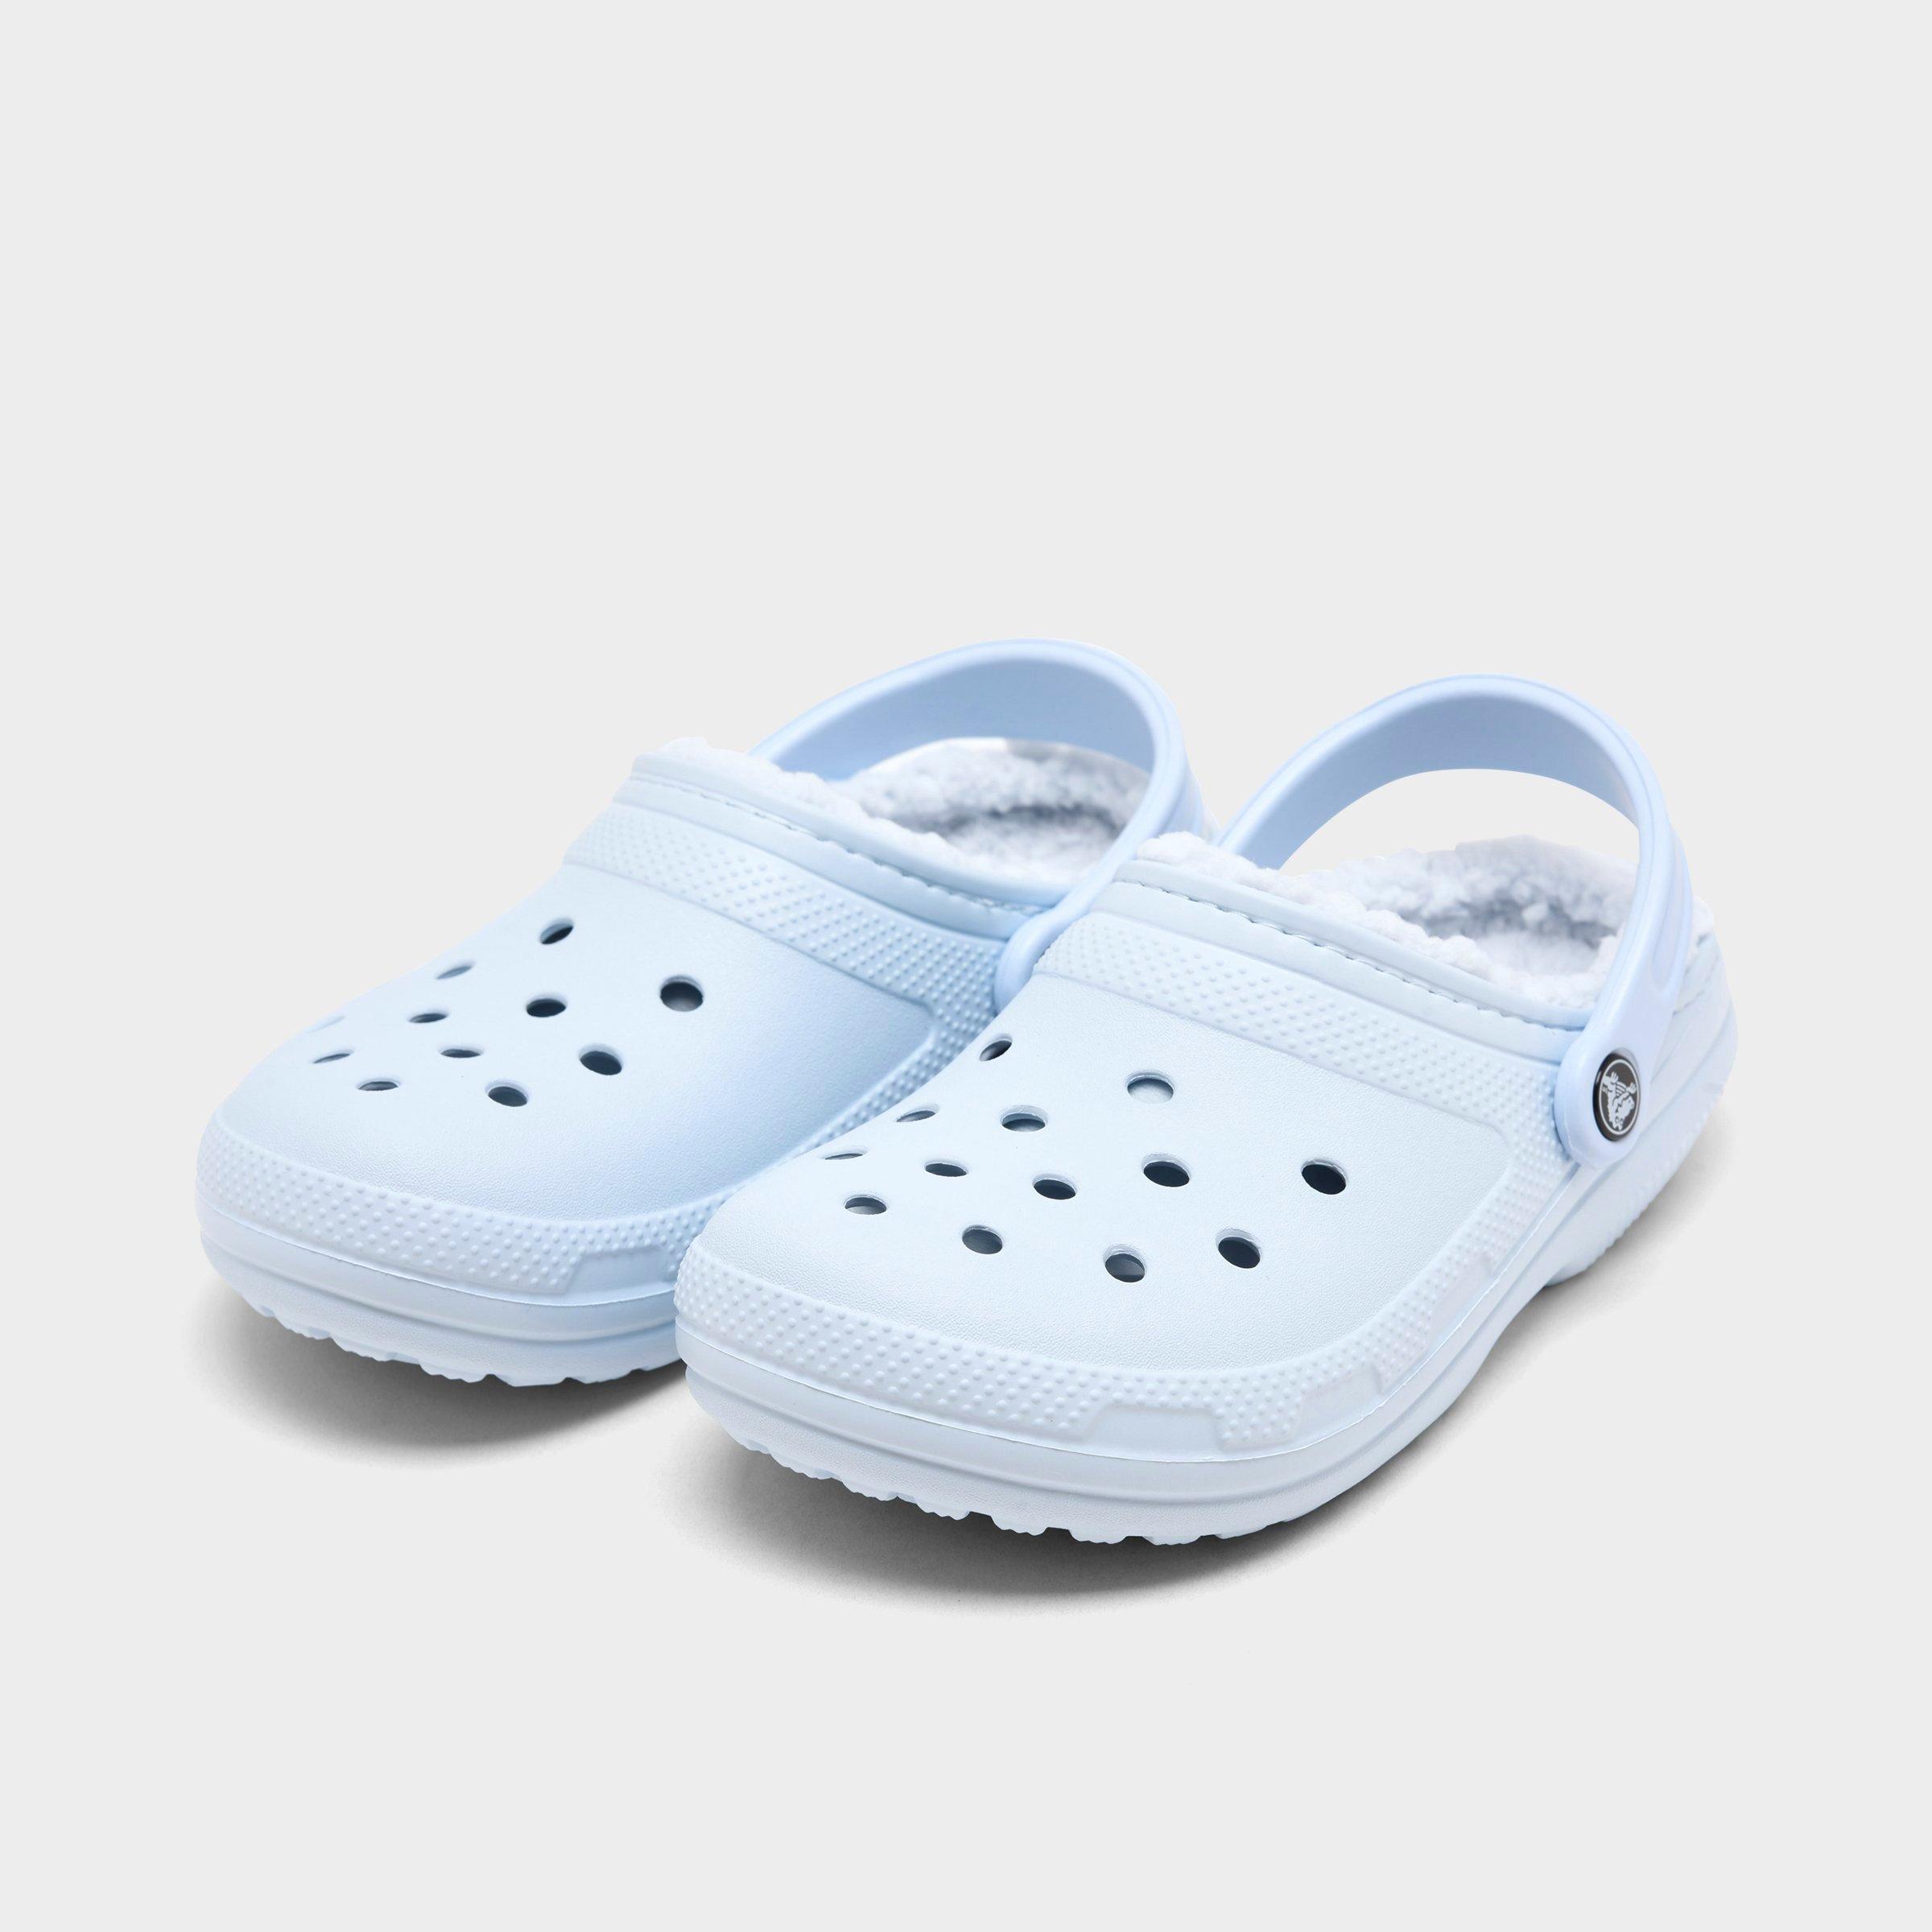 Crocs forradas-Classic lined clog-White Grey